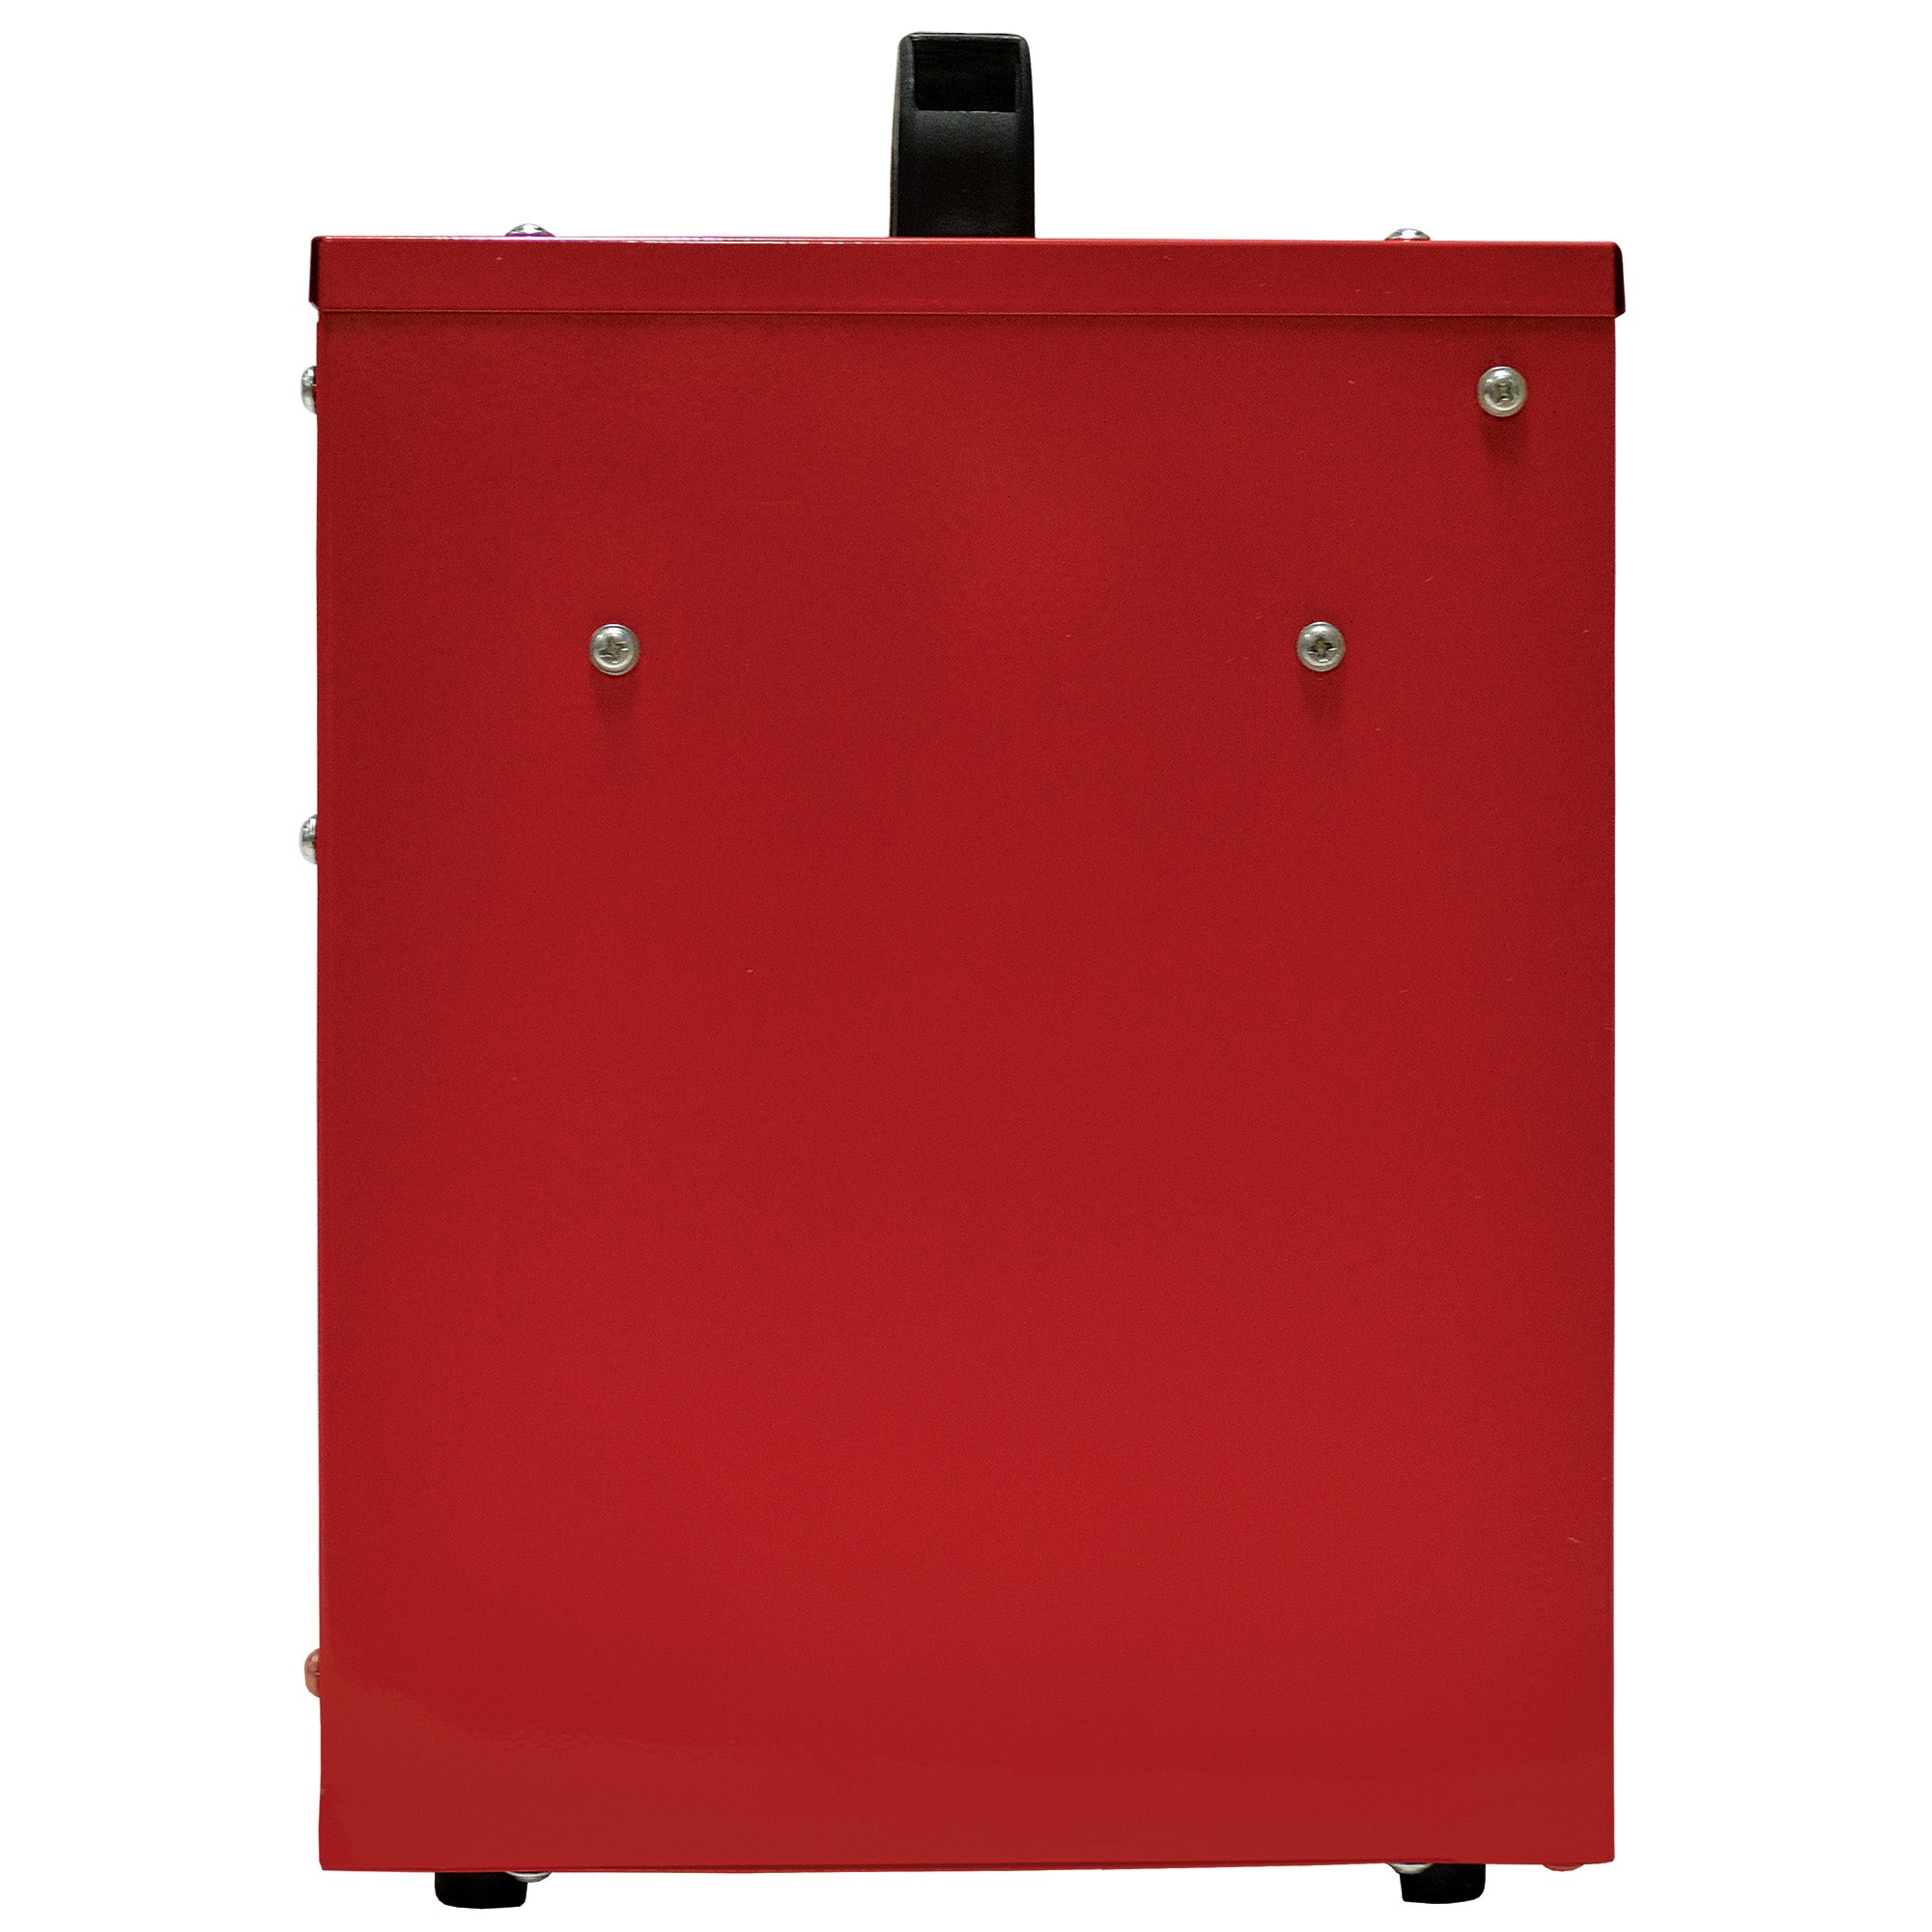 Commercial Drum Fan Heater, 3 Heat Settings, 2000W, Red